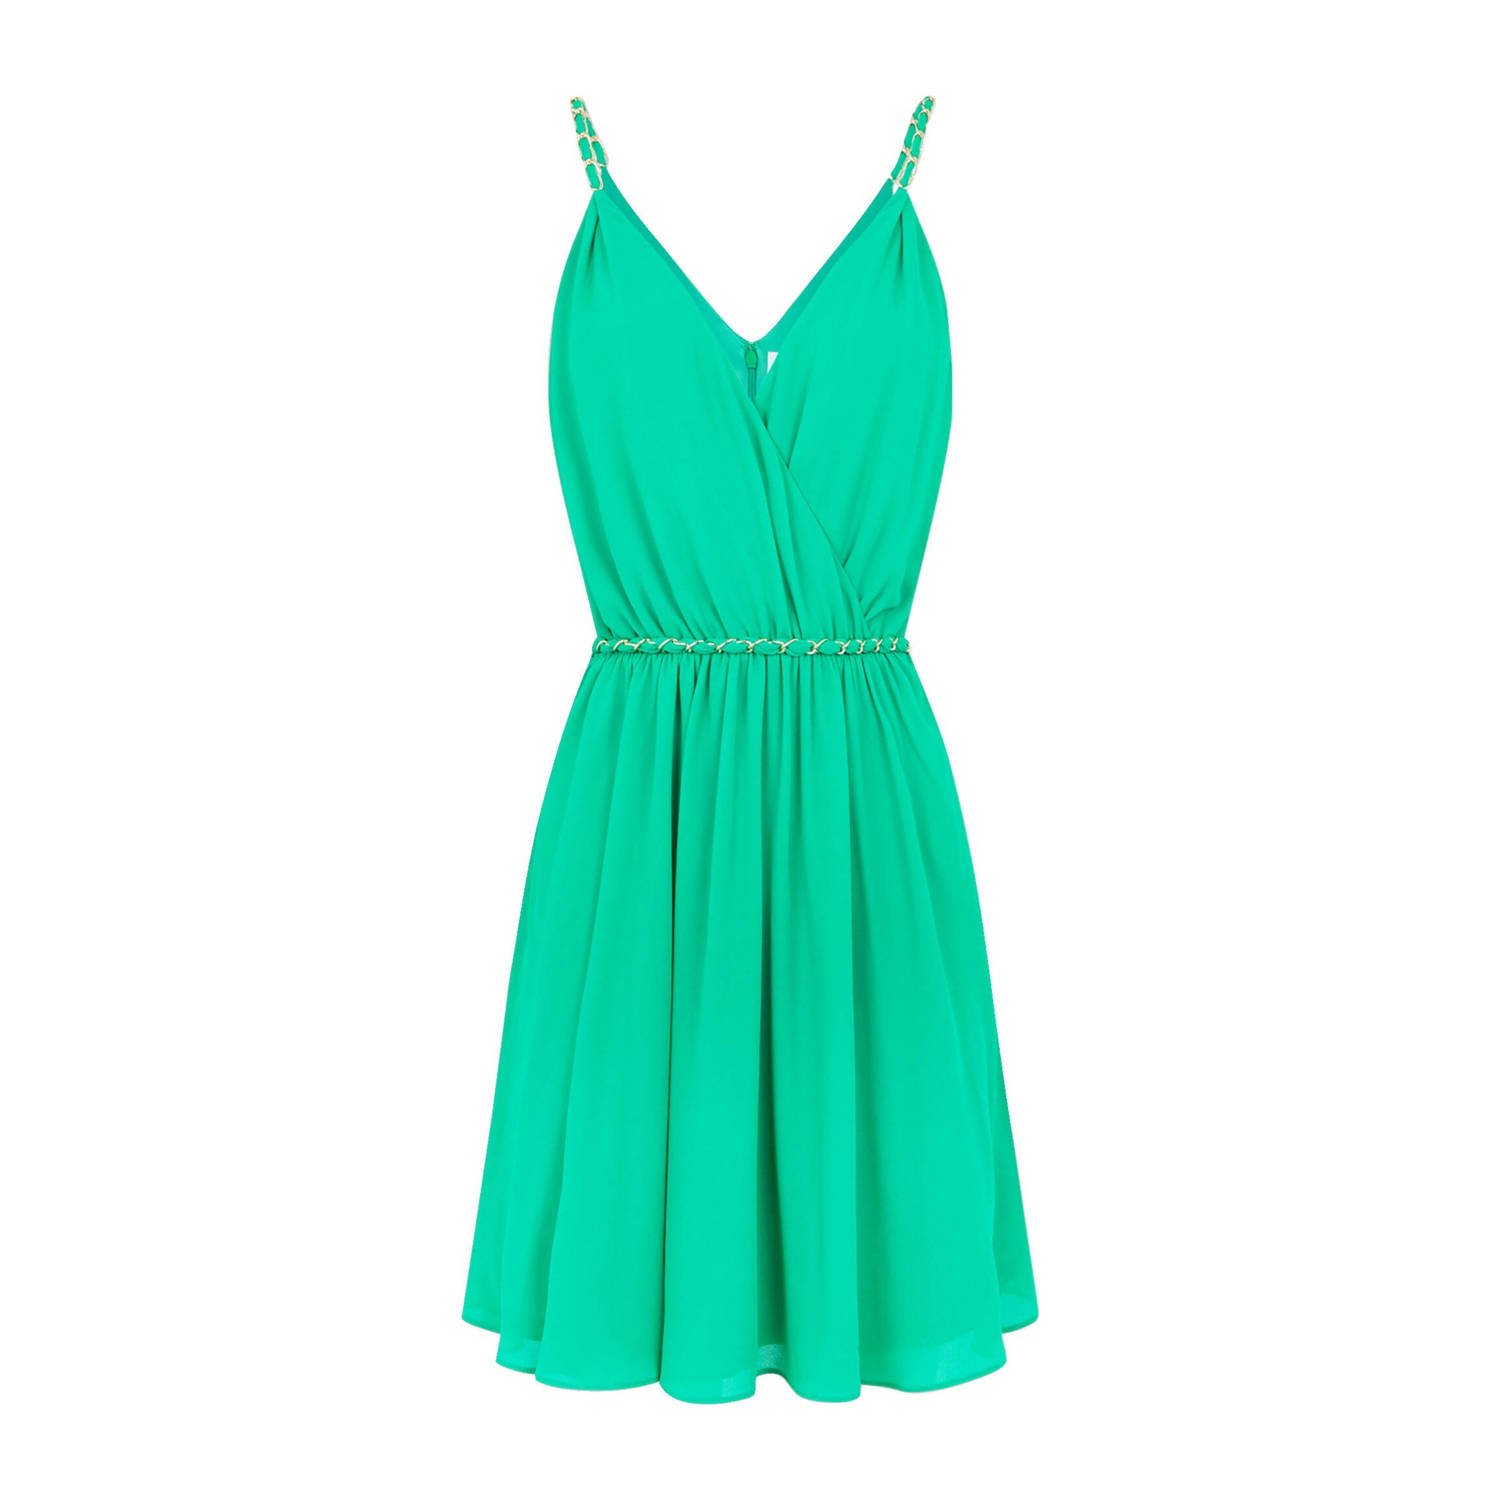 Morgan A-lijn jurk groen